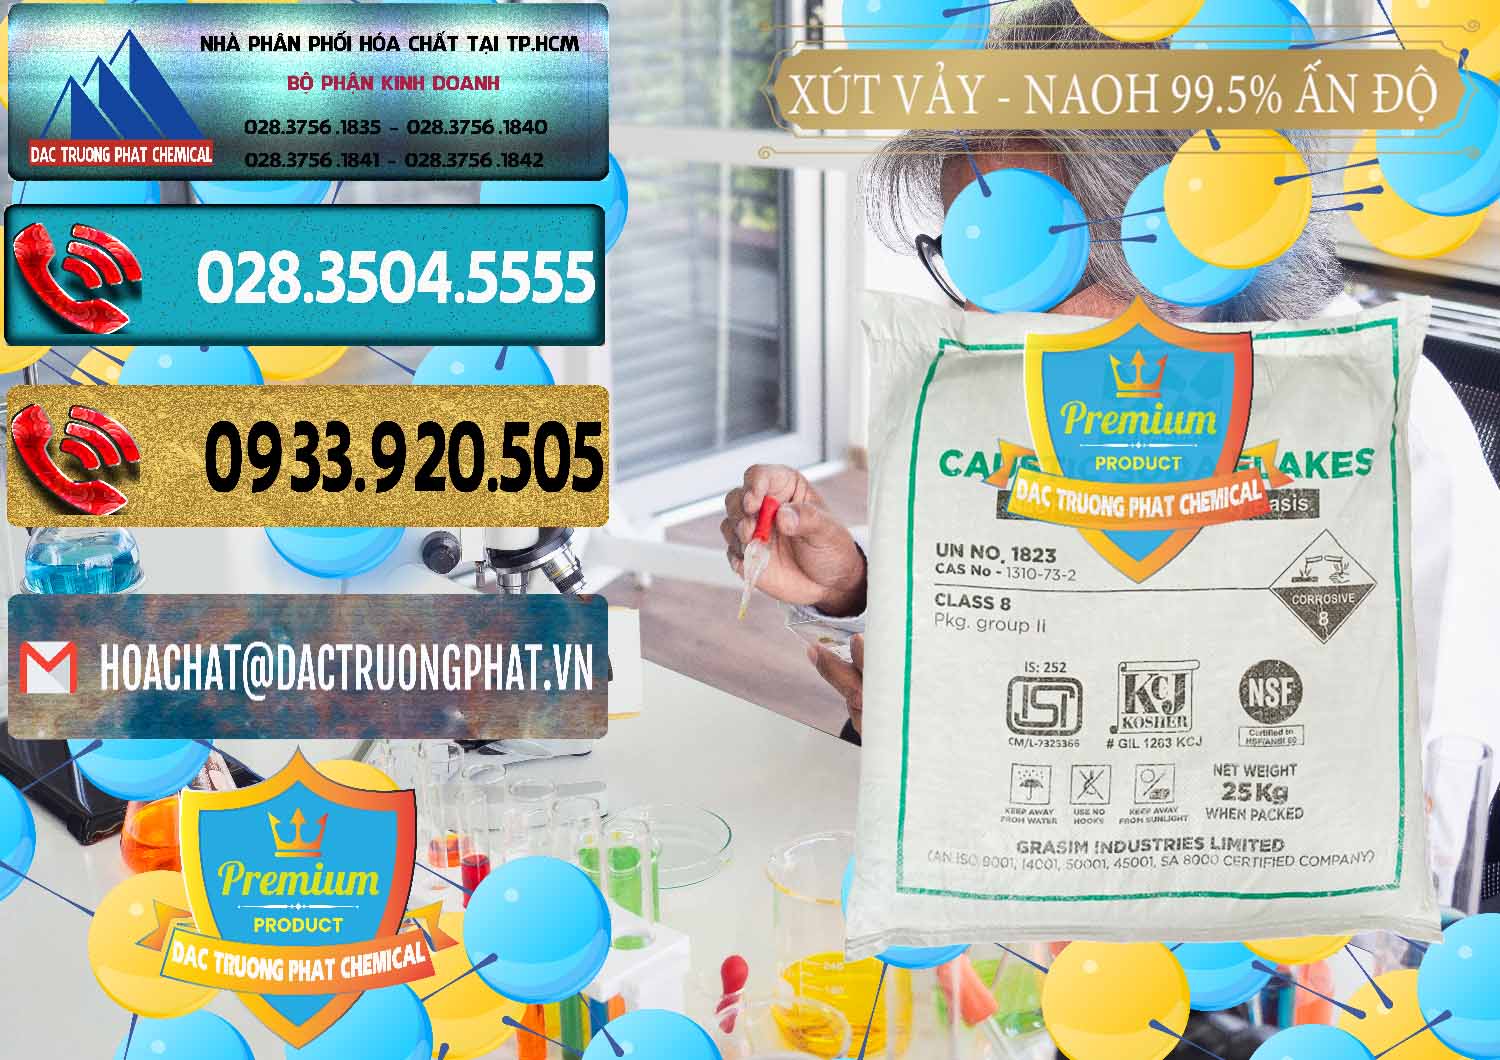 Nơi bán và cung ứng Xút Vảy - NaOH Vảy 99.5% Aditya Birla Grasim Ấn Độ India - 0170 - Công ty chuyên kinh doanh và phân phối hóa chất tại TP.HCM - hoachatdetnhuom.com